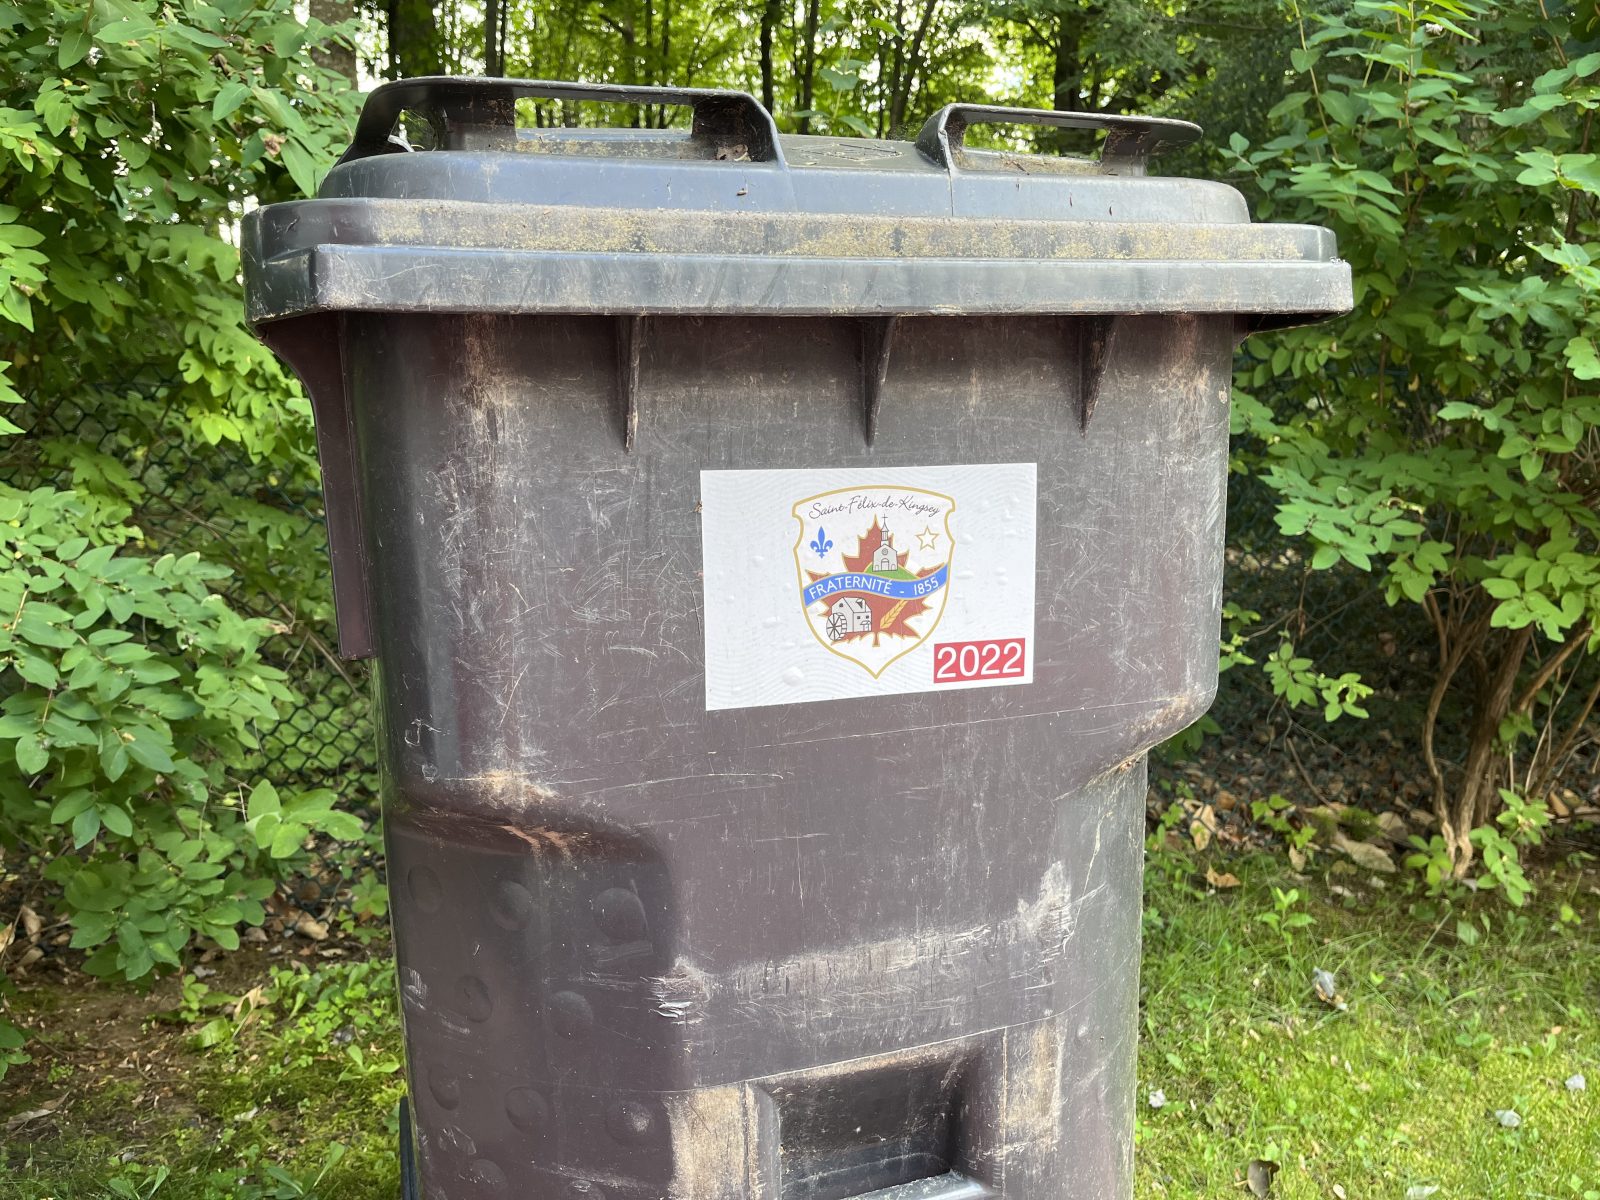 Des citoyens critiquent la gestion des ordures à Saint-Félix-de-Kingsey